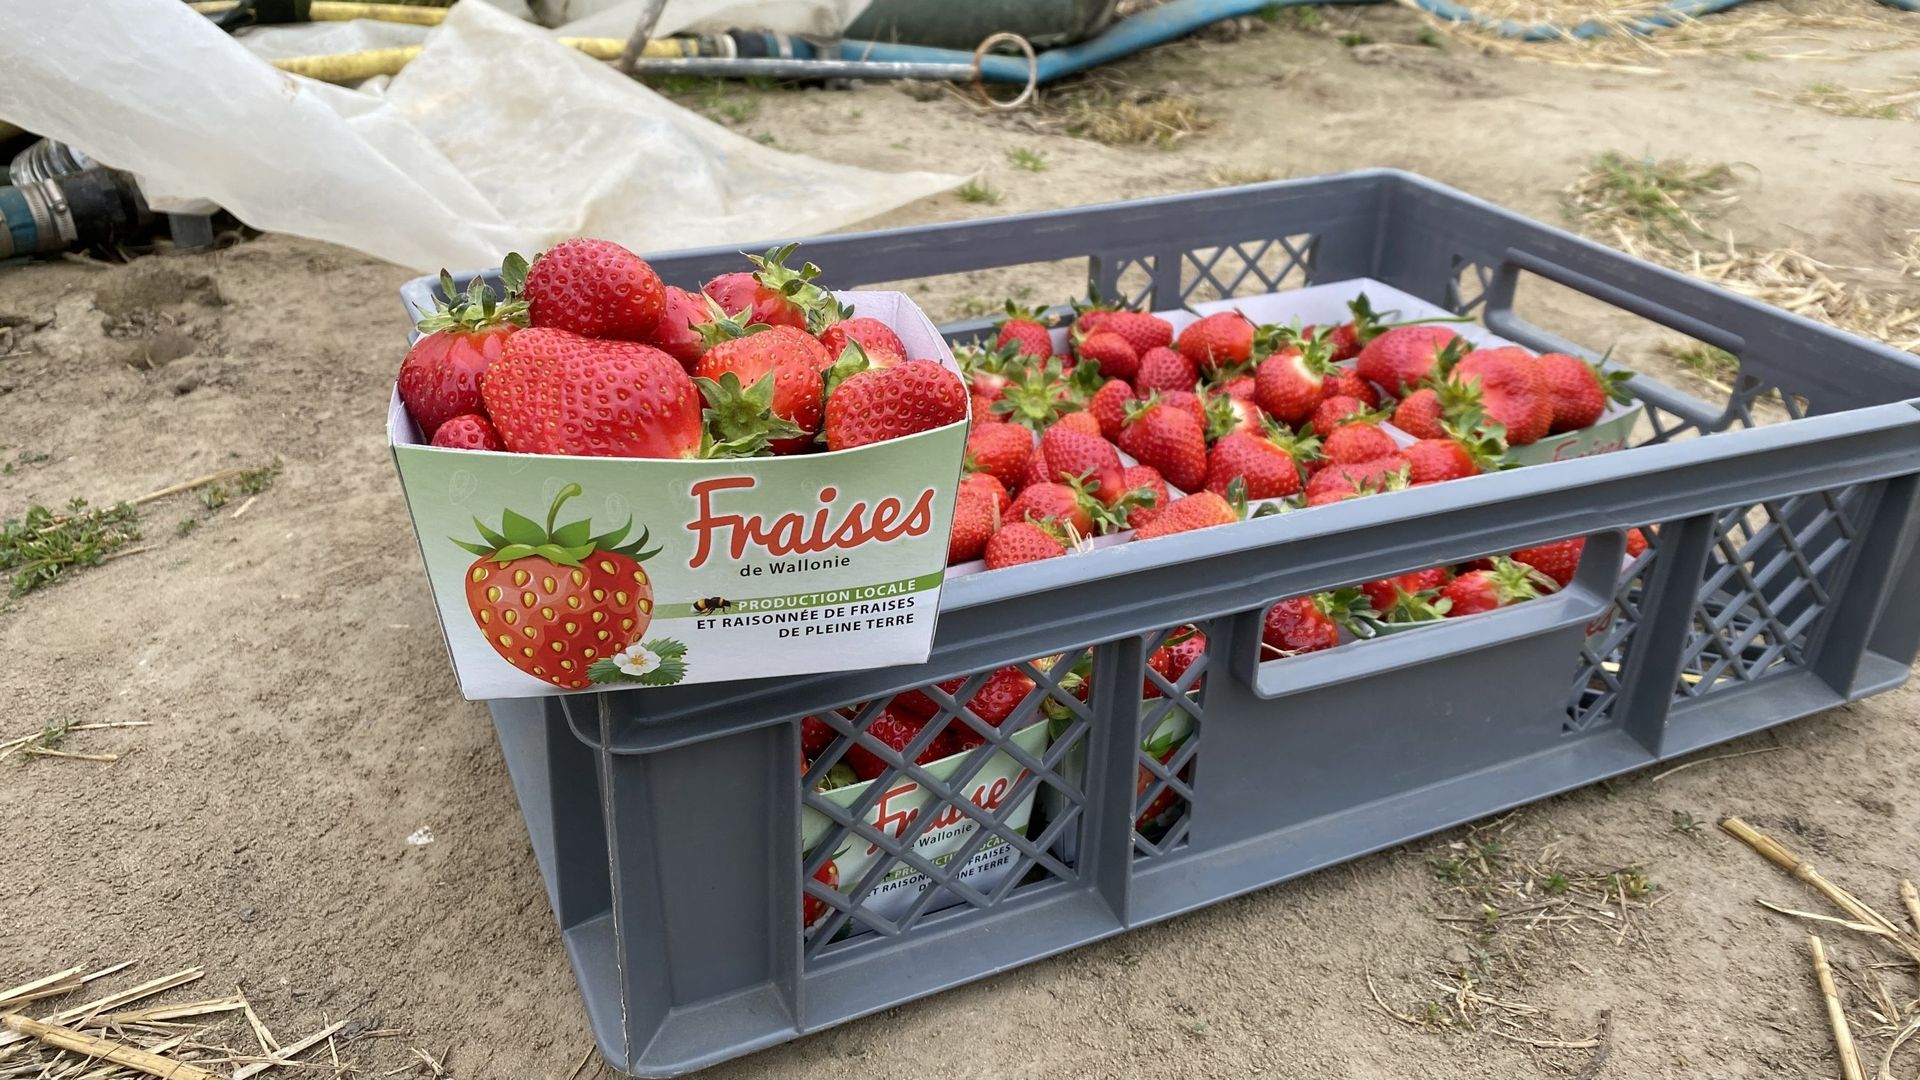 47 producteurs de fraises wallons se sont associés pour lancer ce nouveau label.